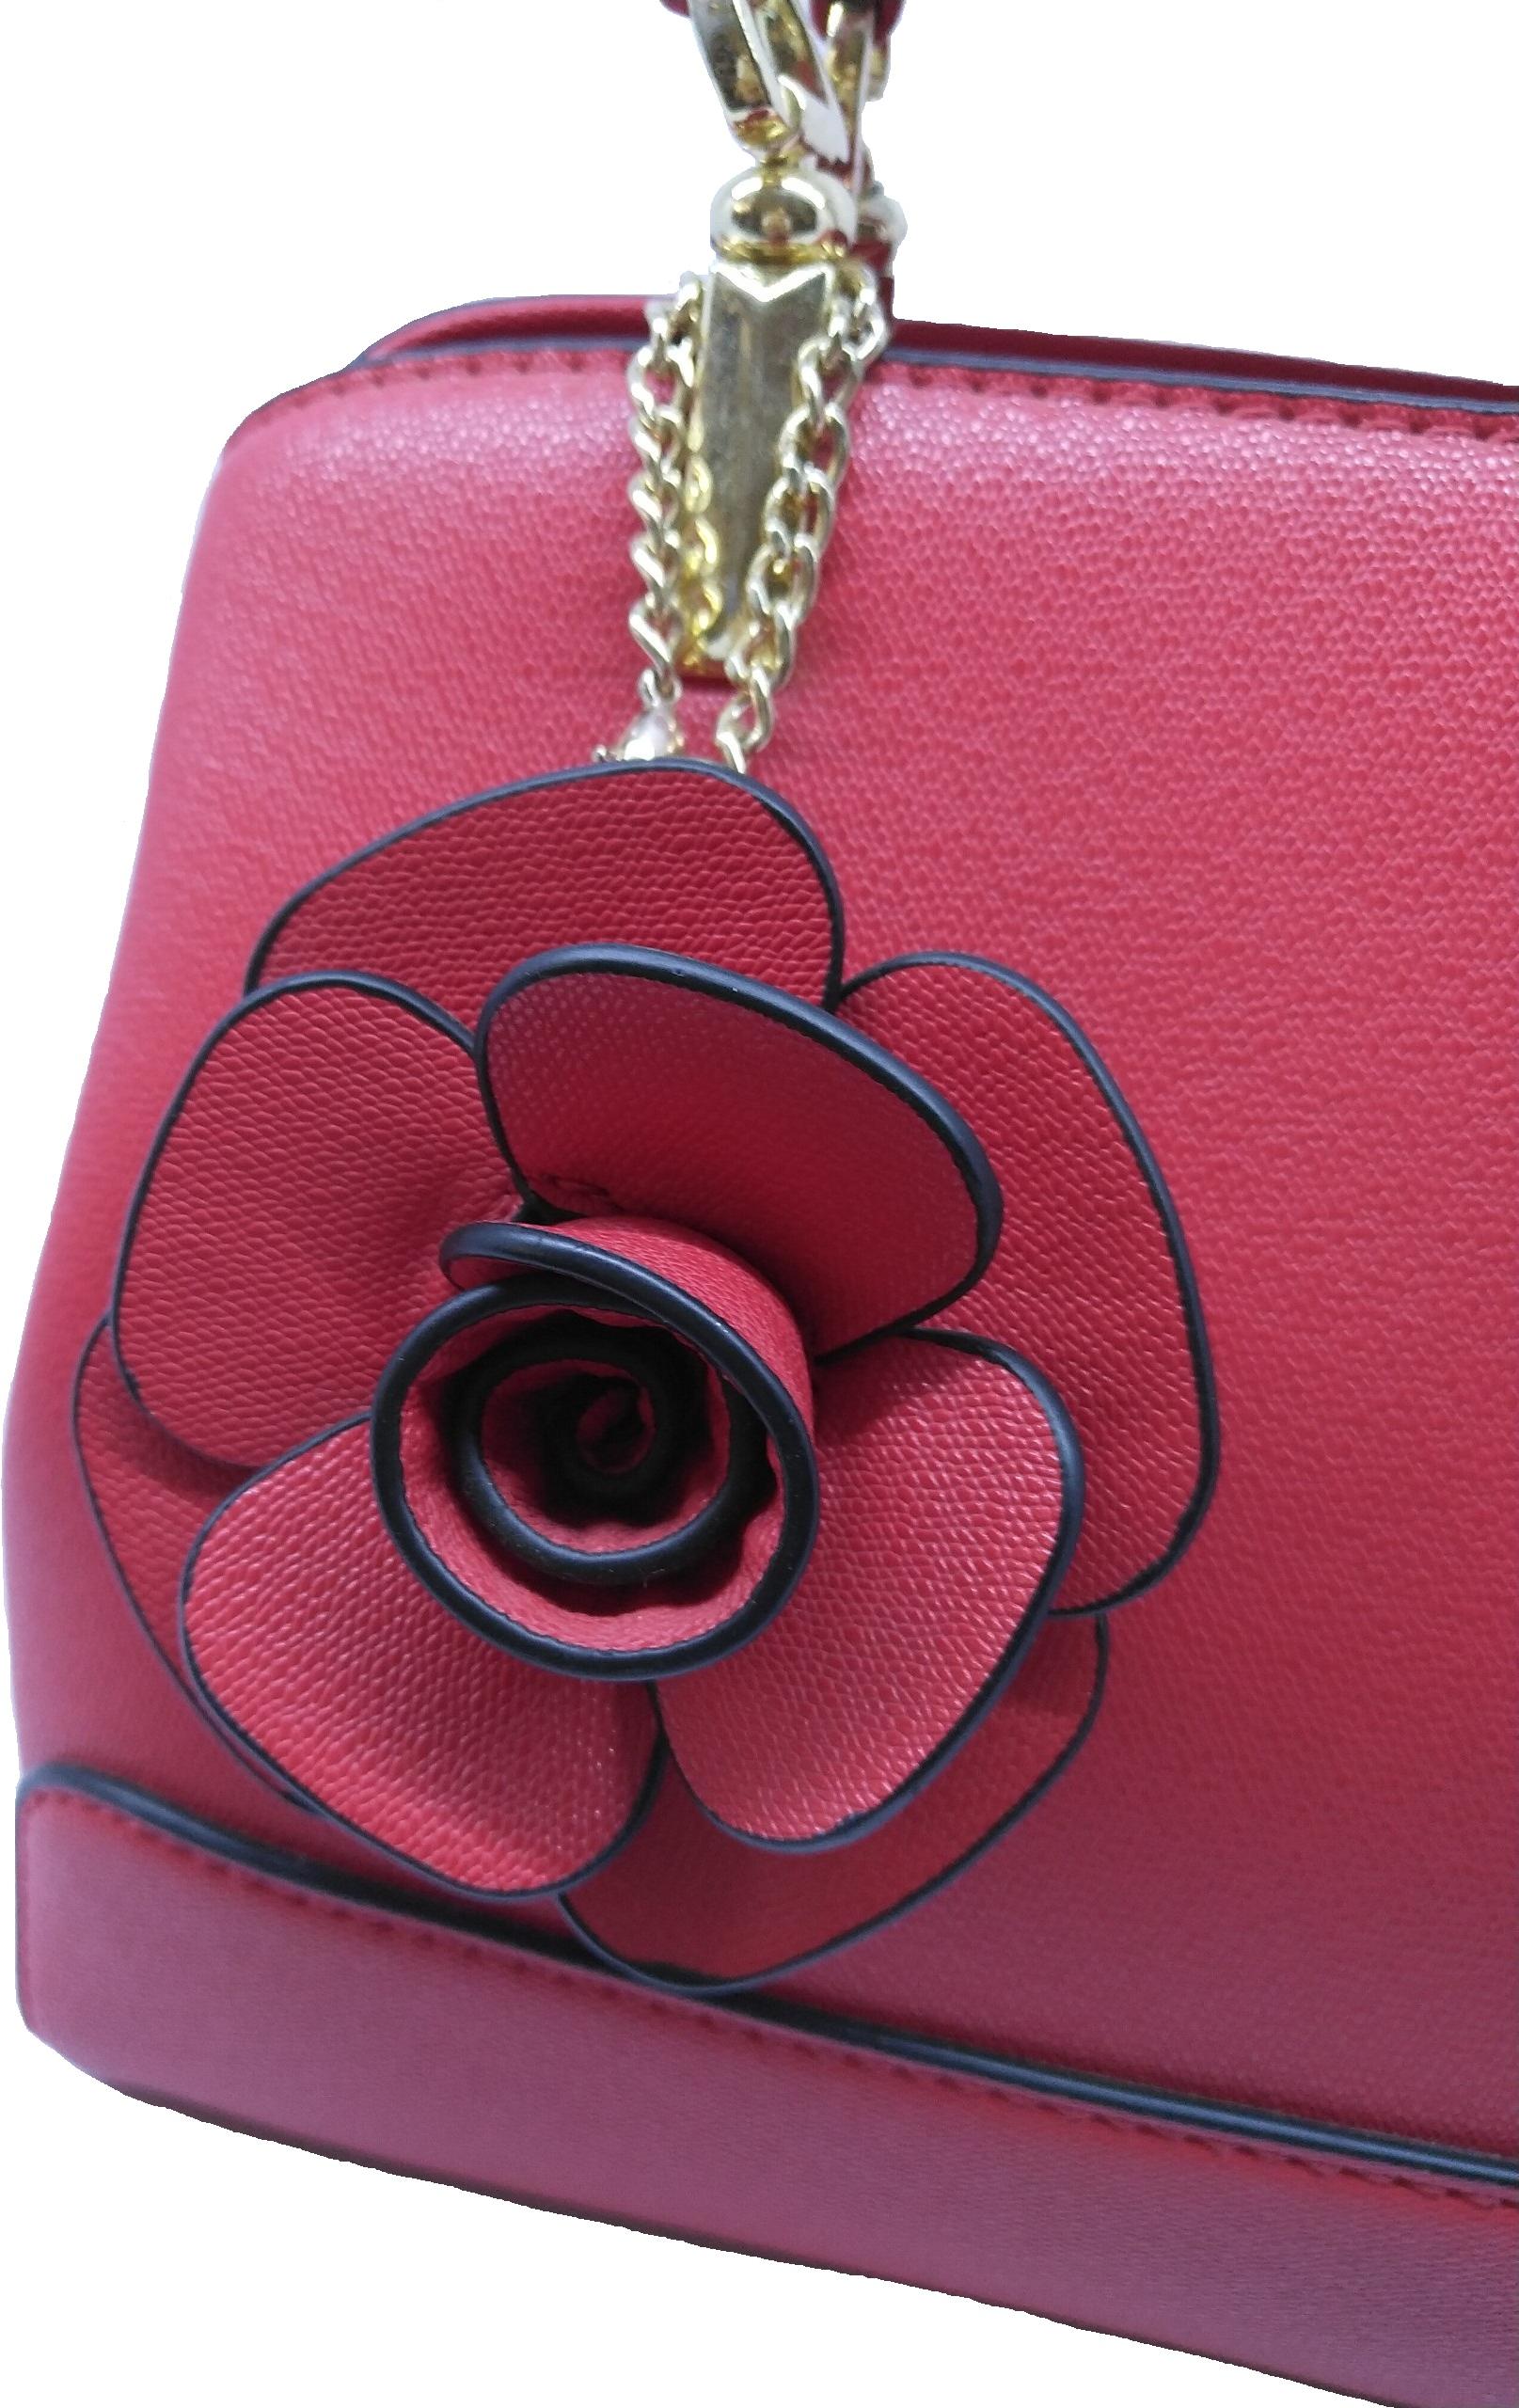 Túi xách nữ thời trang công sở đính kèm hoa- màu đỏ